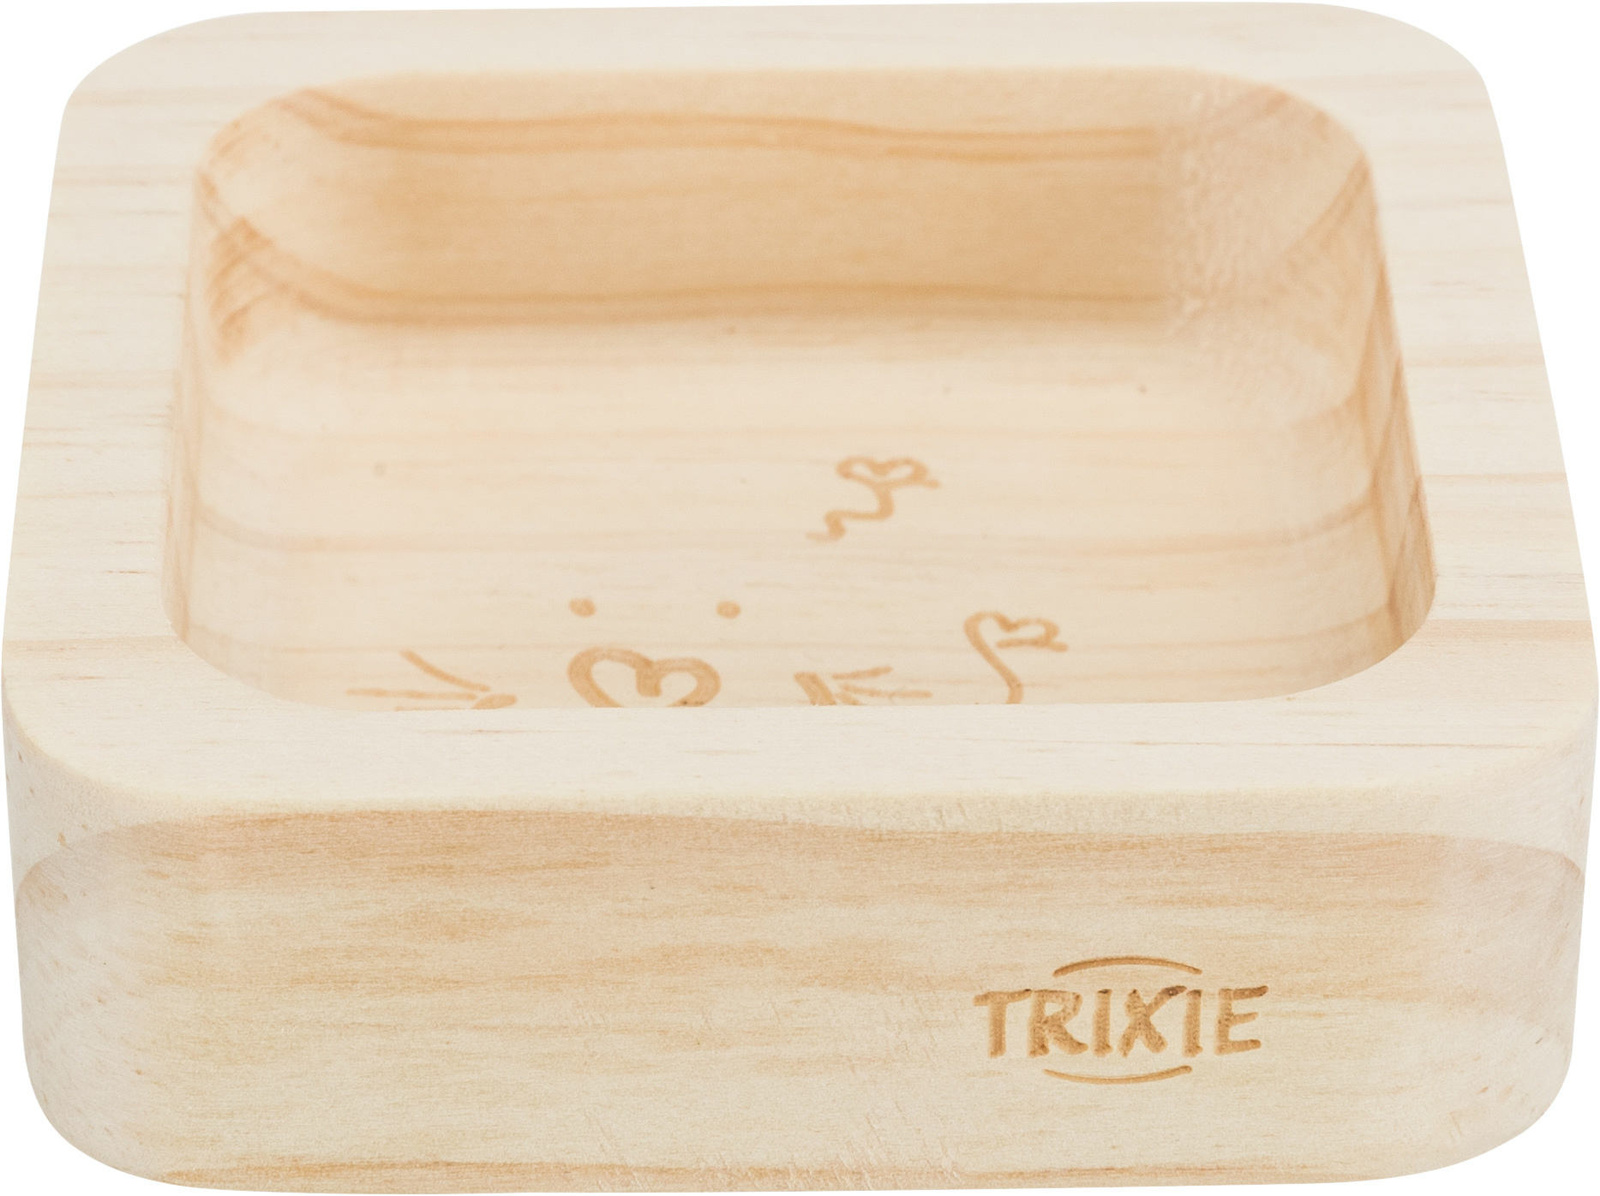 цена Trixie Trixie миска, дерево (11 см)